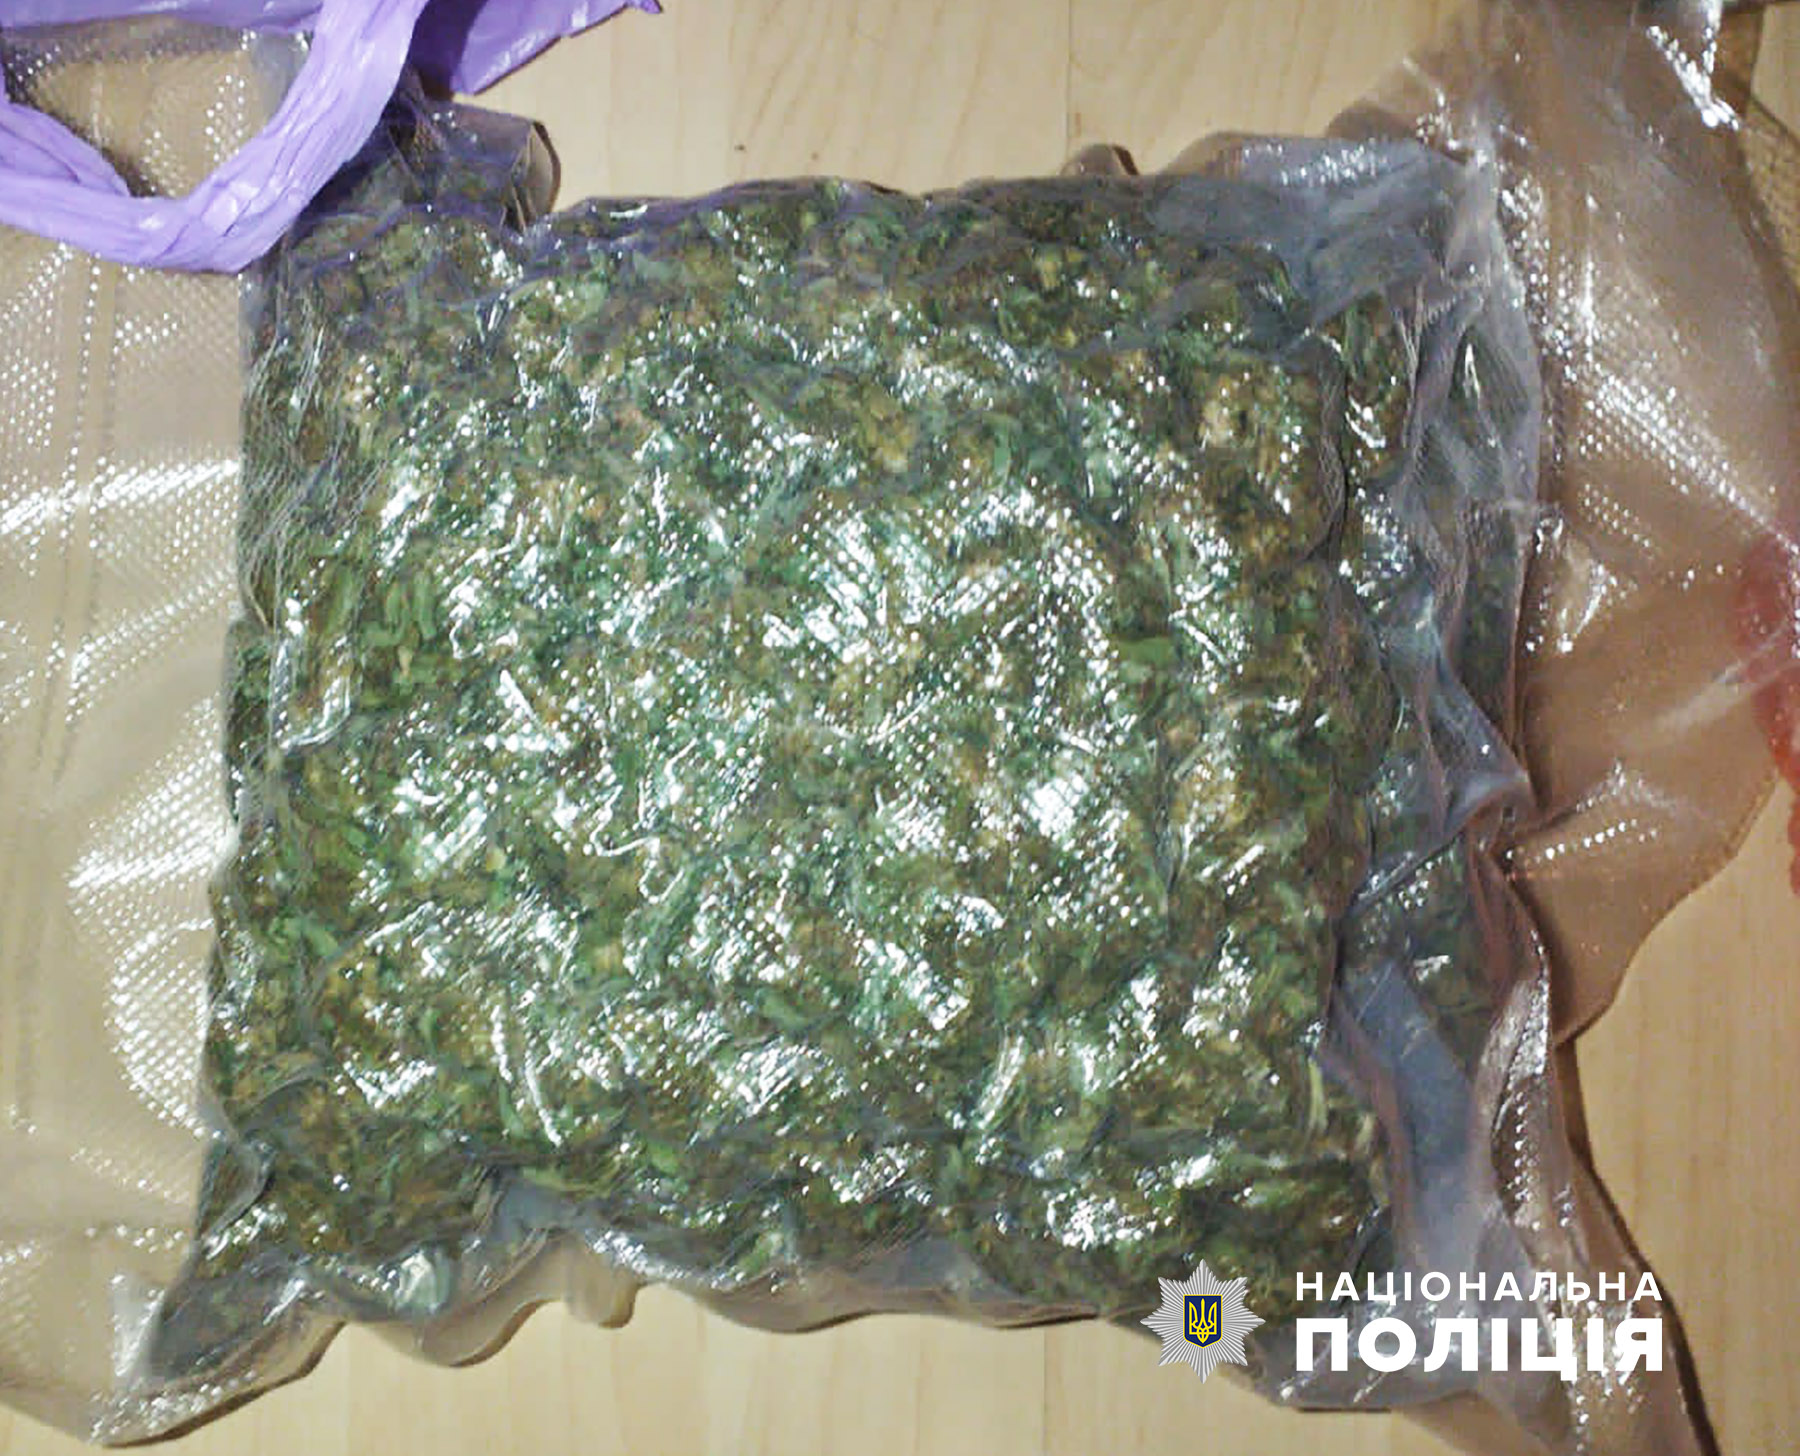 «товар» на 750 тисяч гривень: запорізькі поліцейські затримали наркозбувача